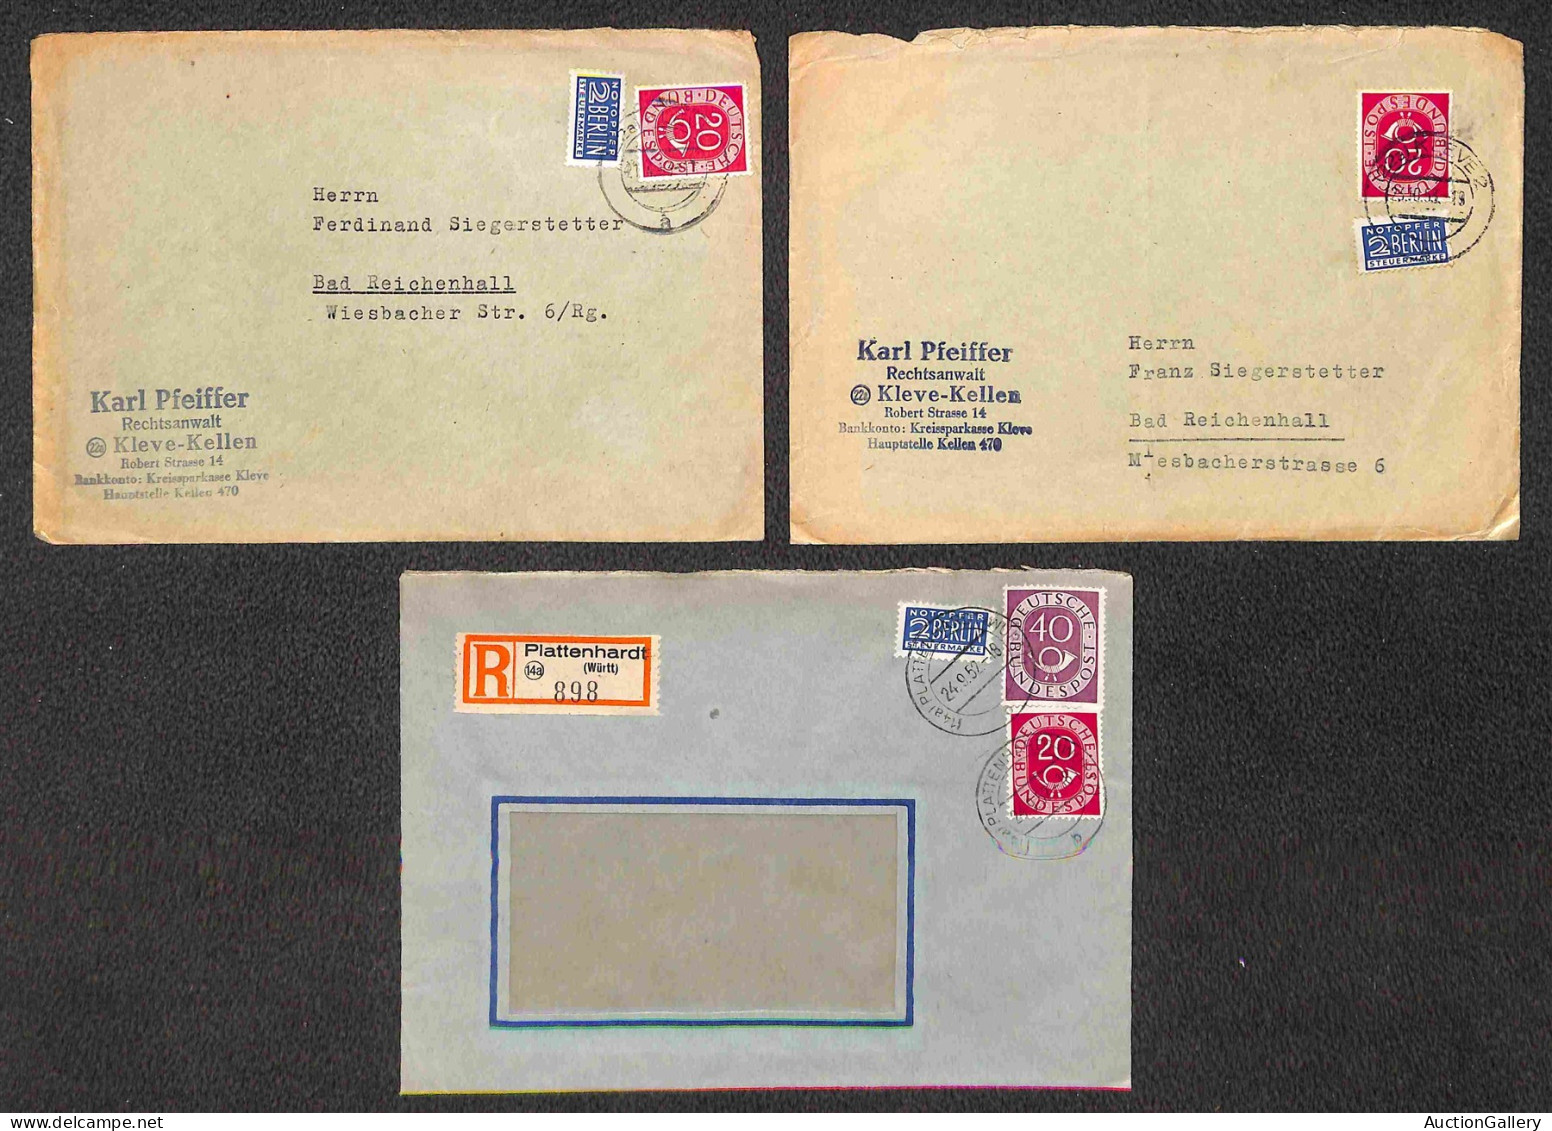 EUROPA - GERMANIA - 1952/1954 - Corno di Posta - insieme di 17 oggetti postali con diverse affrancature dell'emissione -